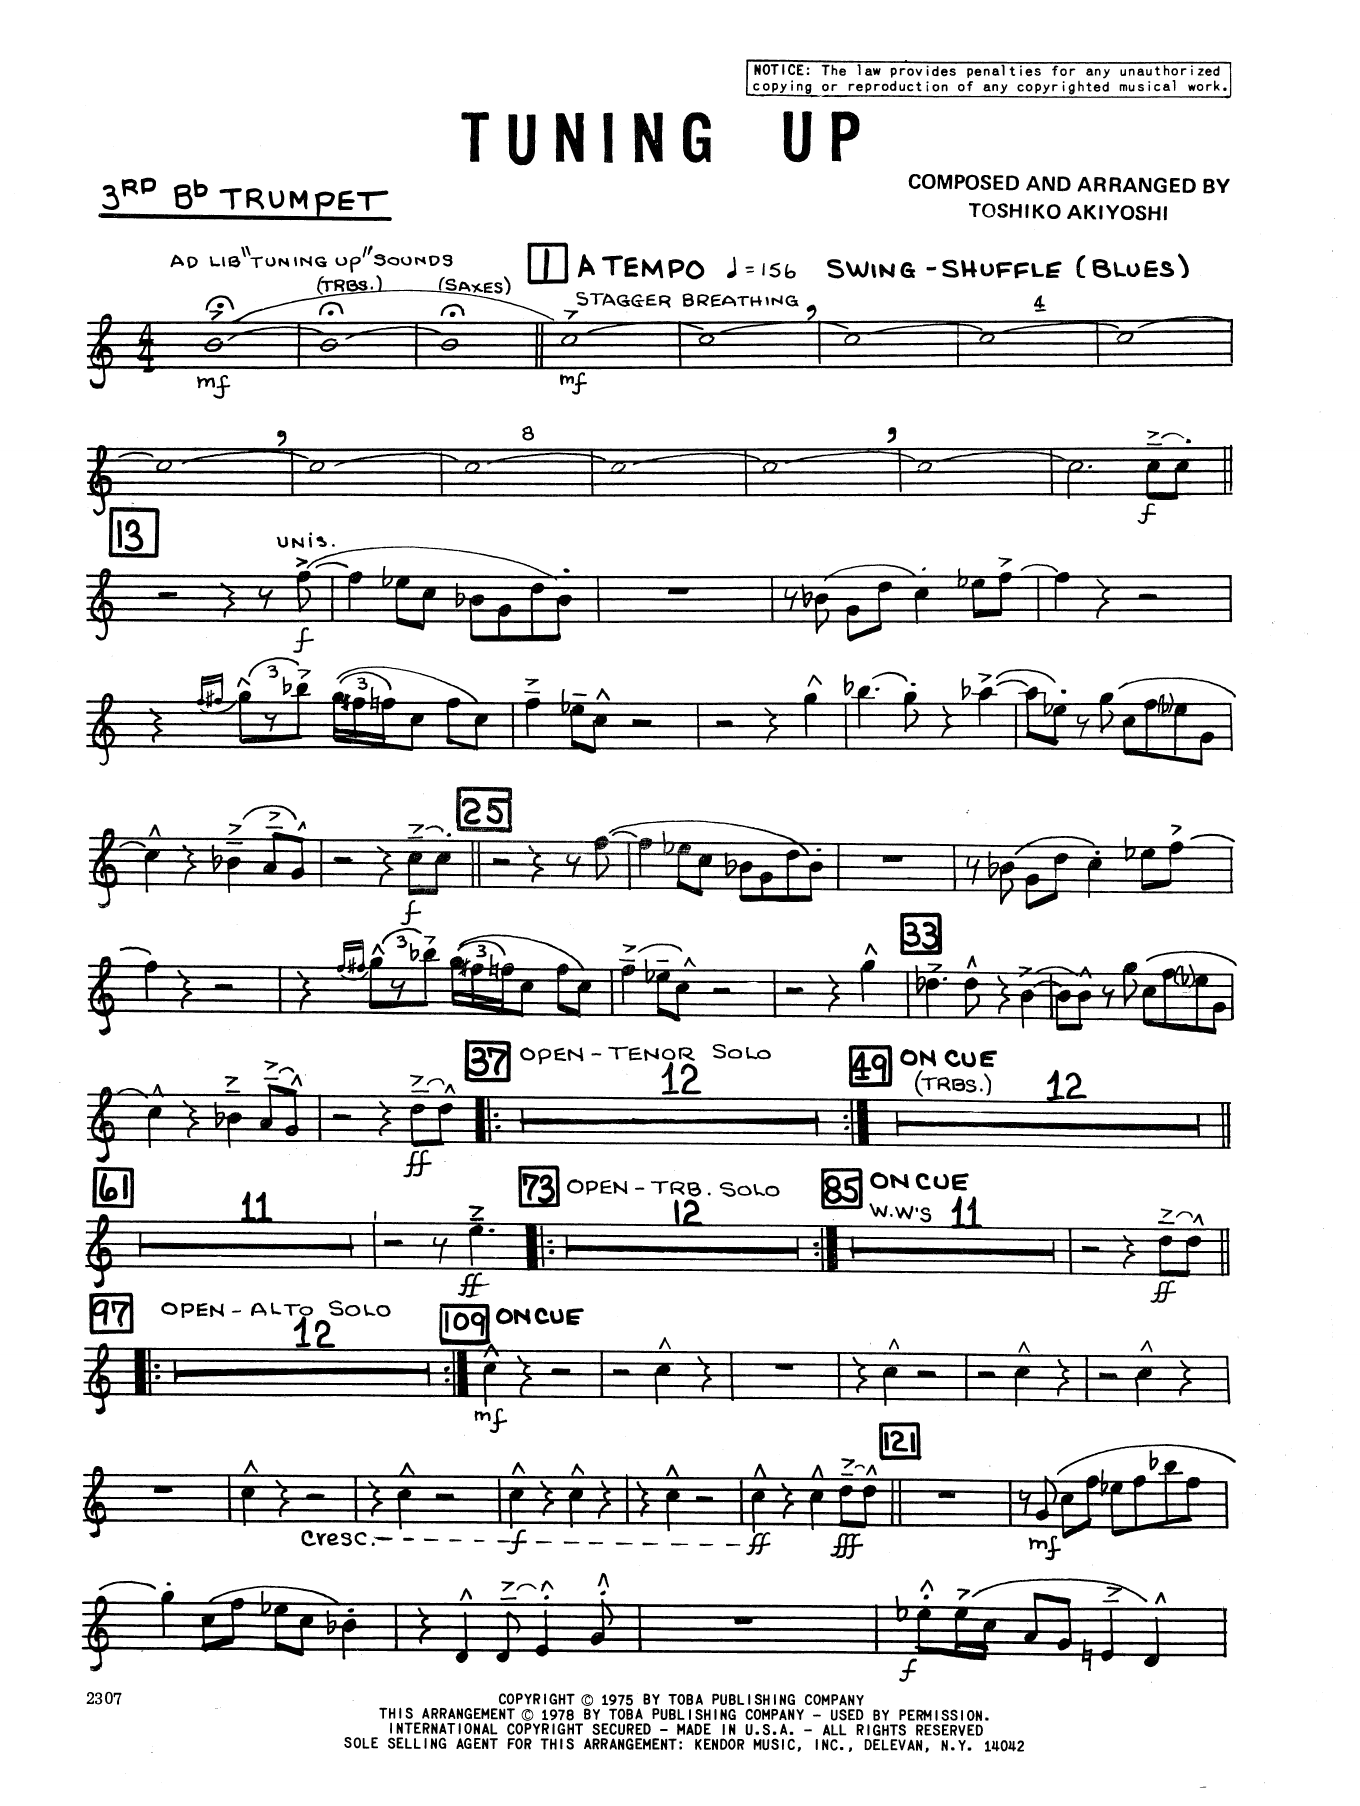 Download Toshiko Akiyoshi Tuning Up - 3rd Bb Trumpet Sheet Music